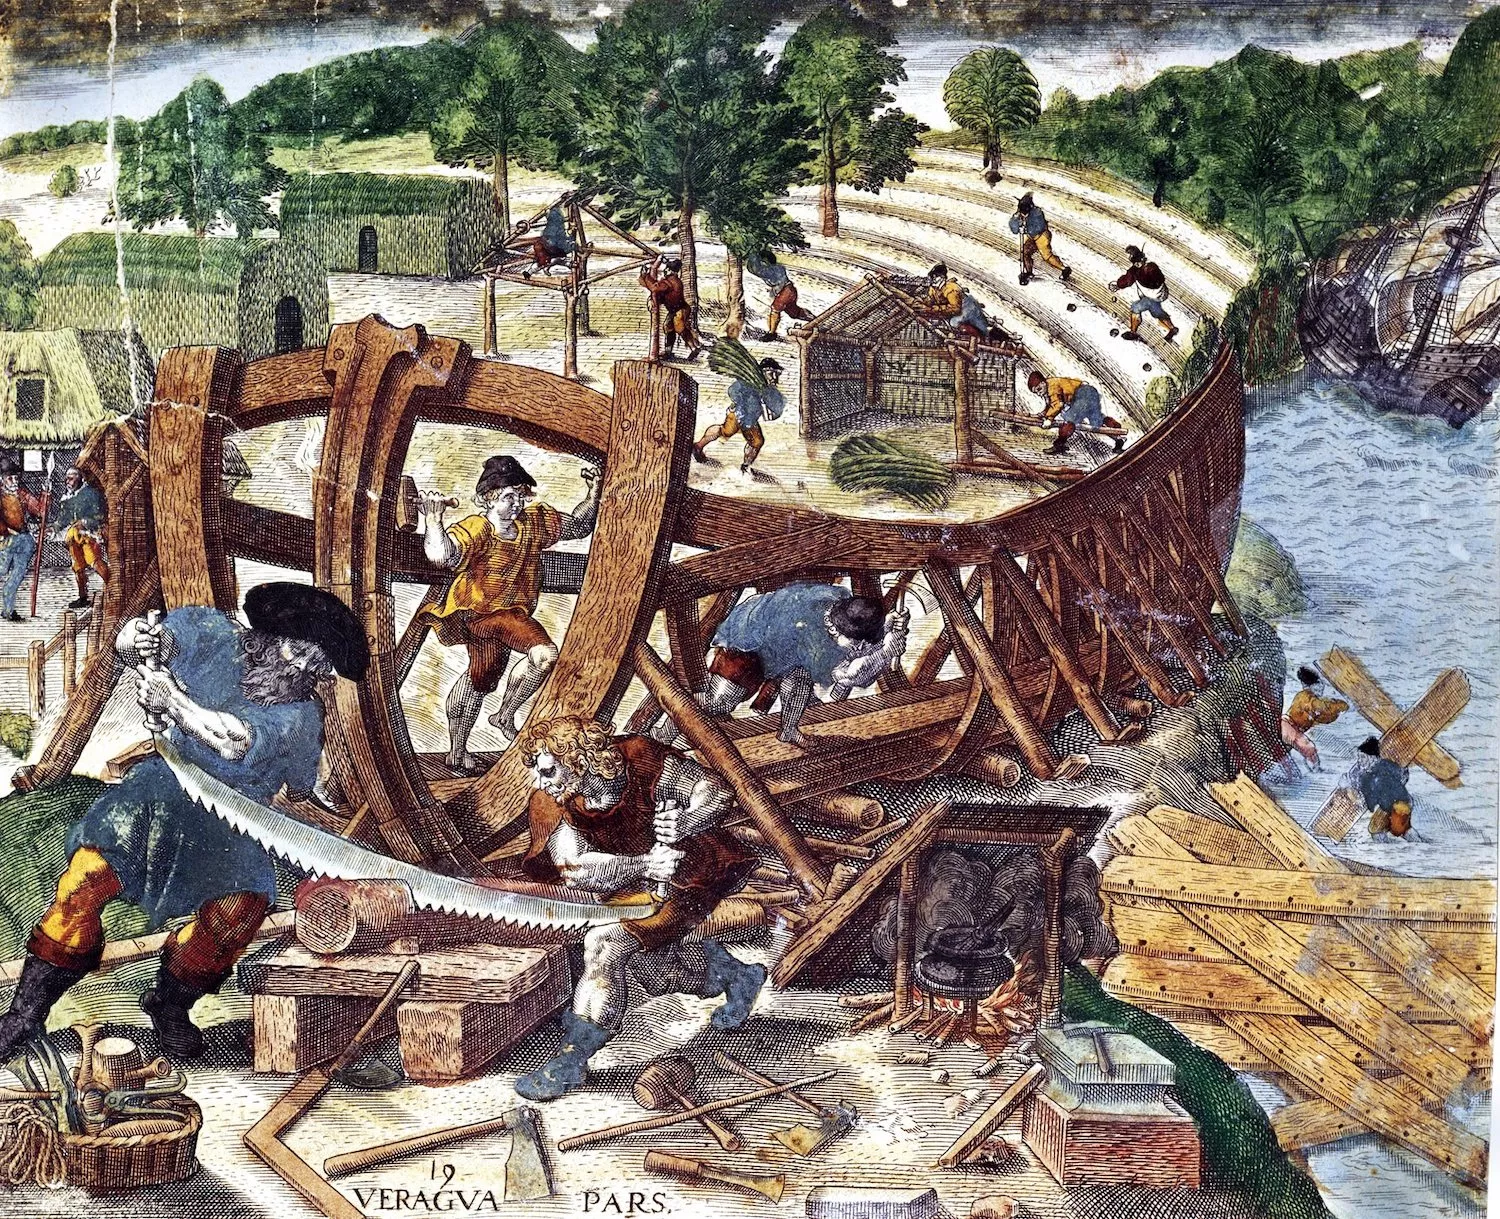 Les galeres foren el principal vaixell de guerra des de l’època antiga fins a l’inici de l’edat moderna